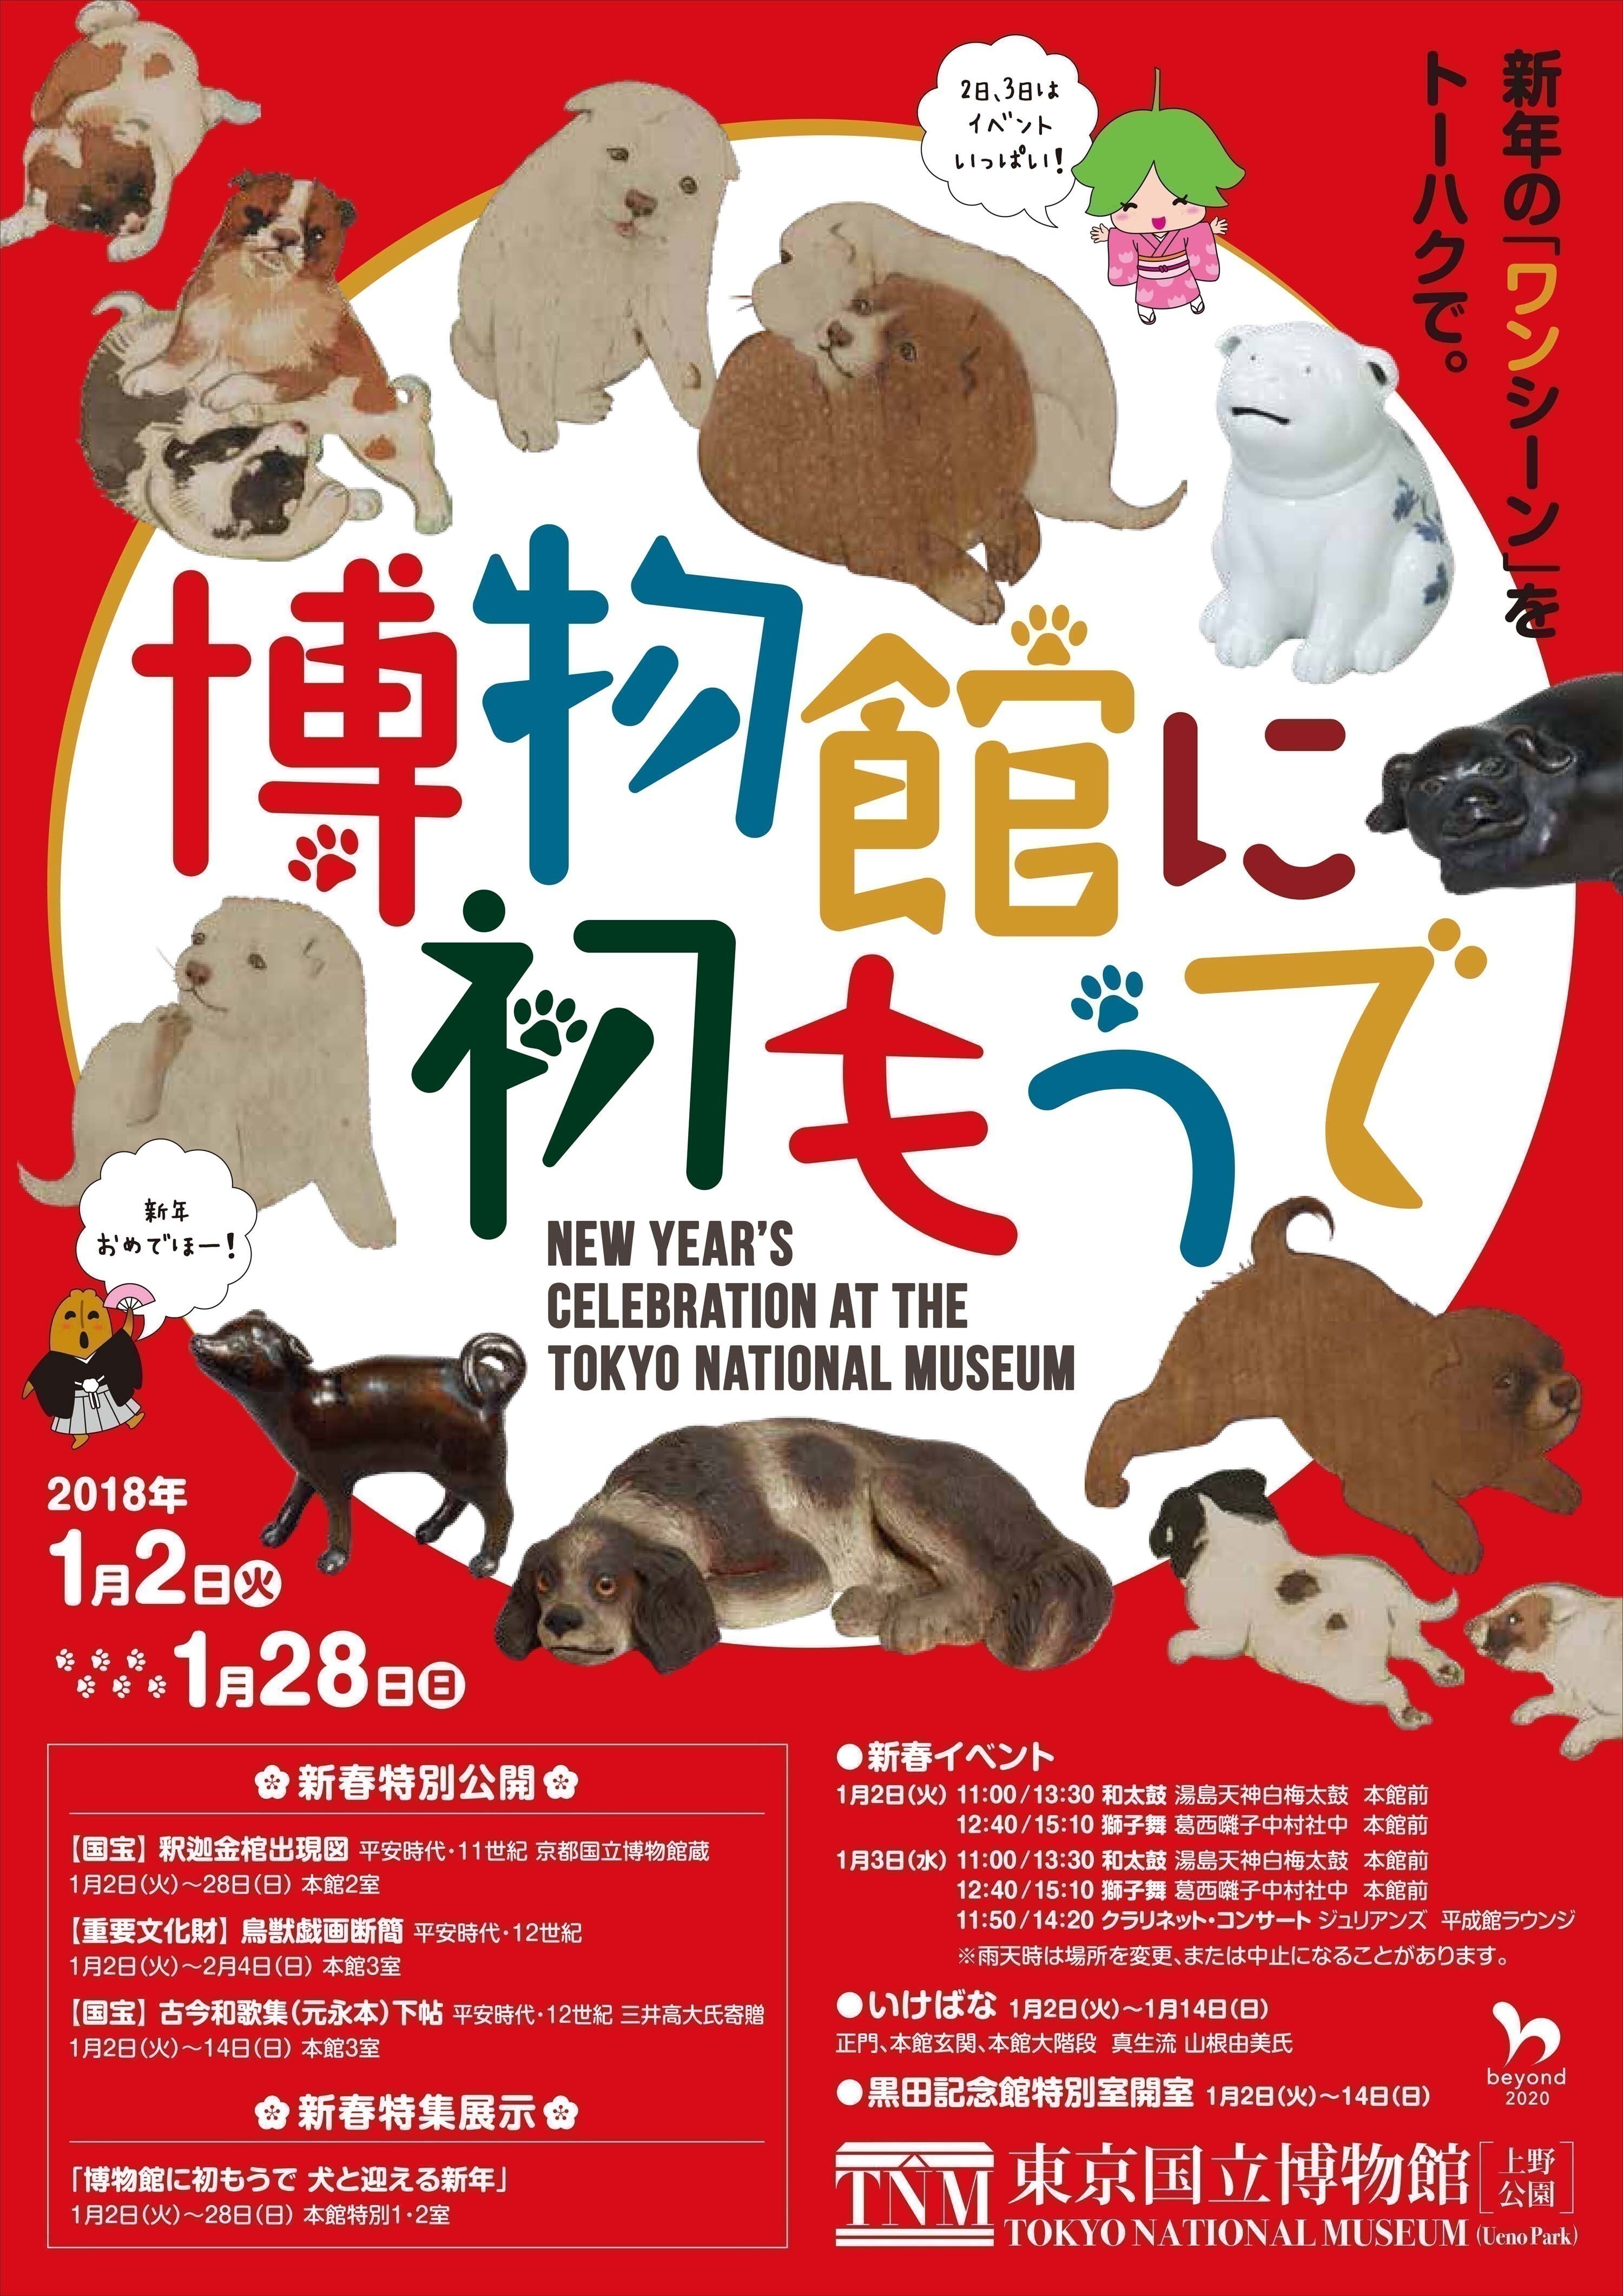 トーハクで 博物館に初もうで を1月2日 実施 犬 をテーマにした特集展示や獅子舞 和太鼓のイベント 東京国立博物館のプレスリリース